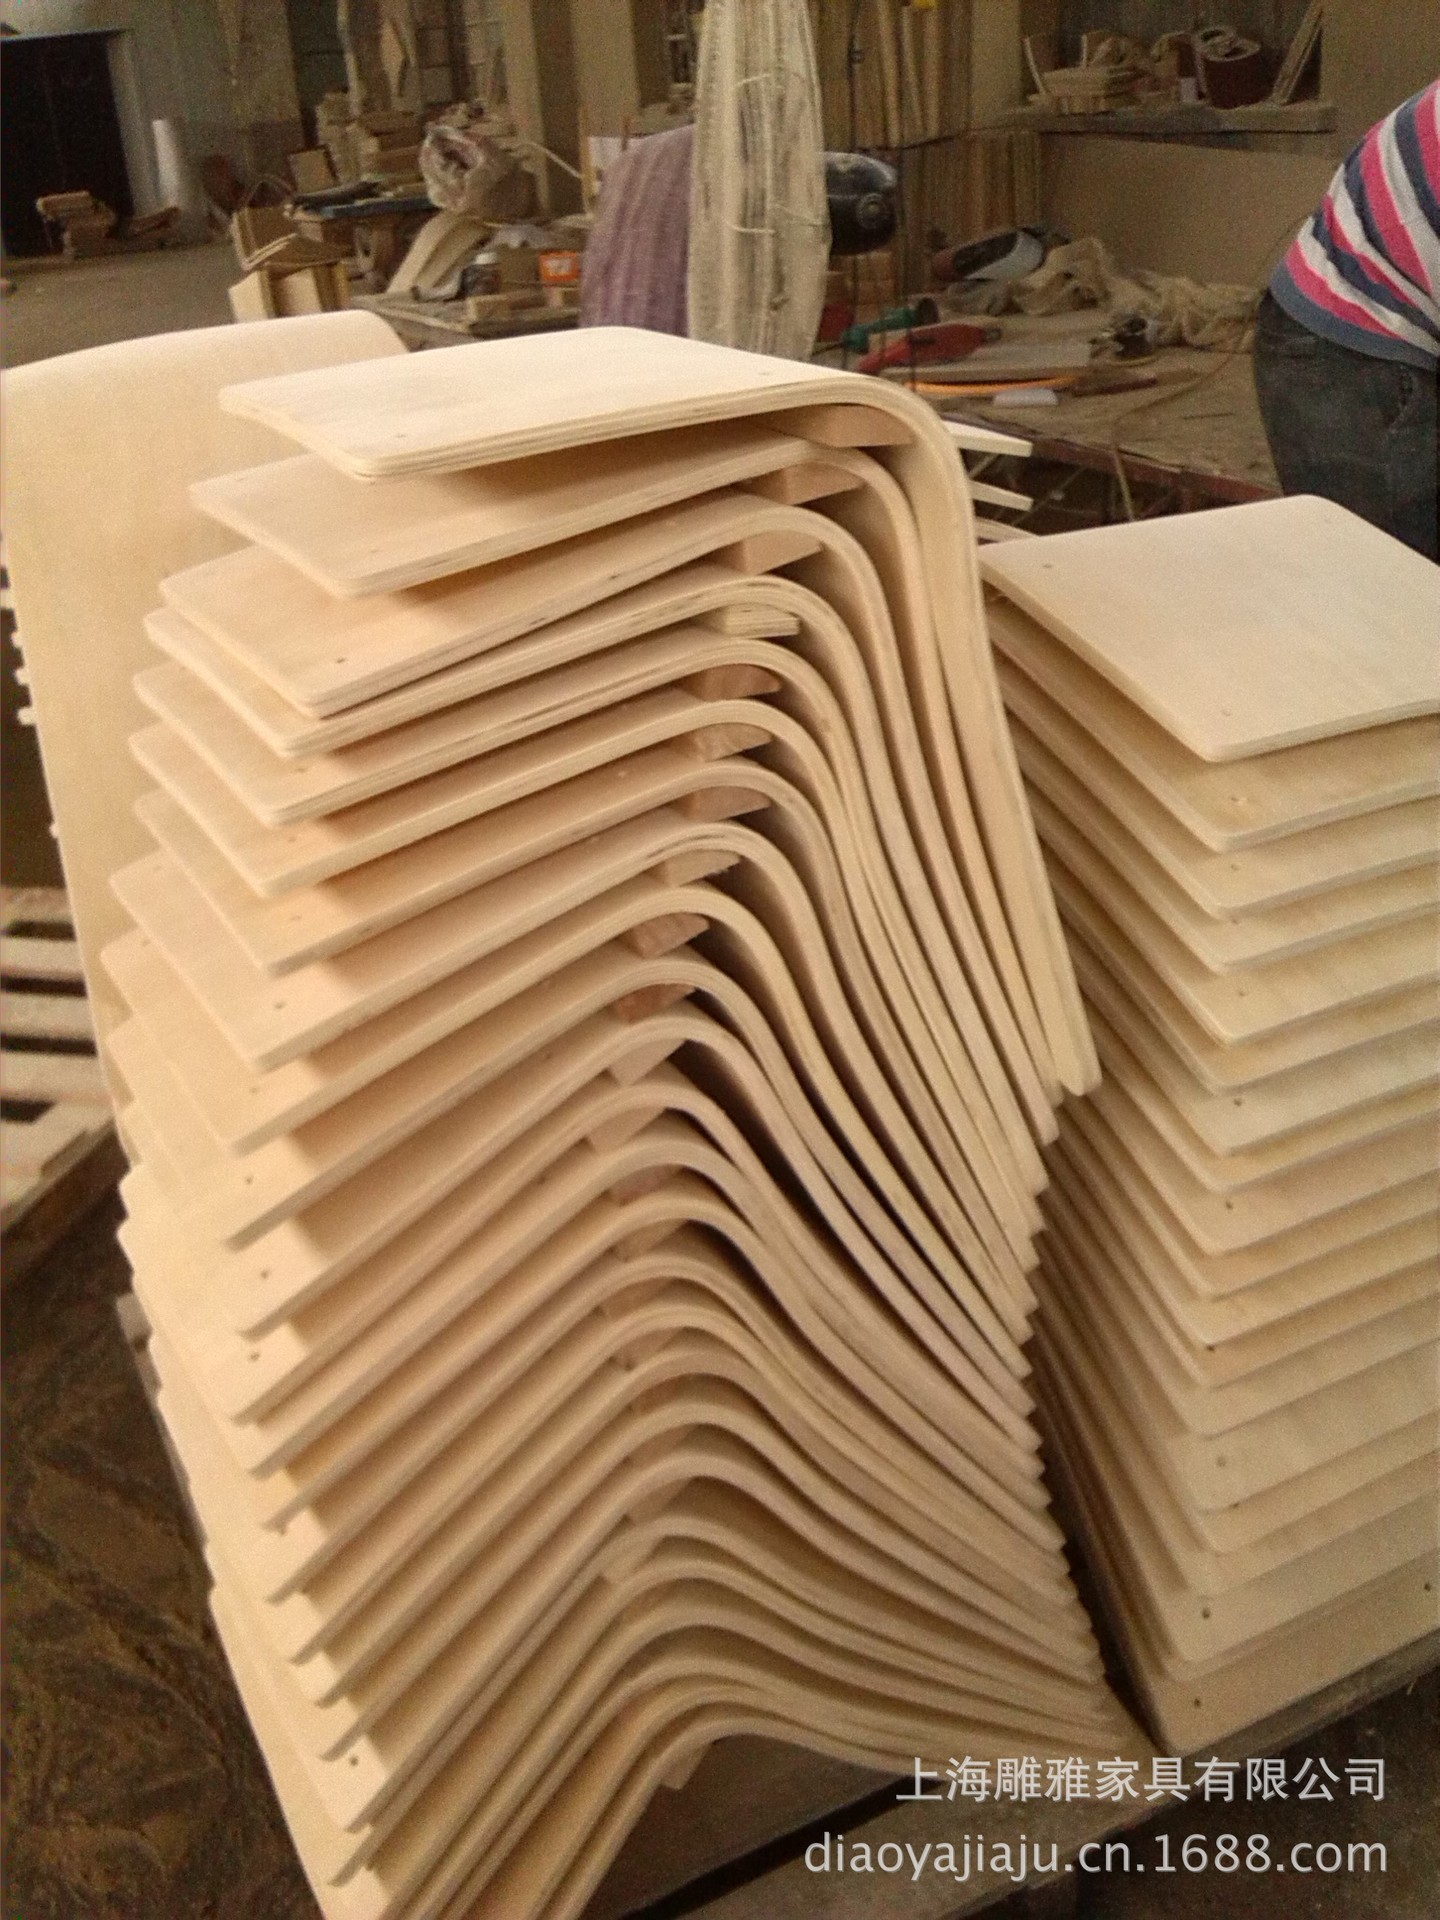 工厂低价处理库存三聚氰胺贴面曲木板,弯曲木配件